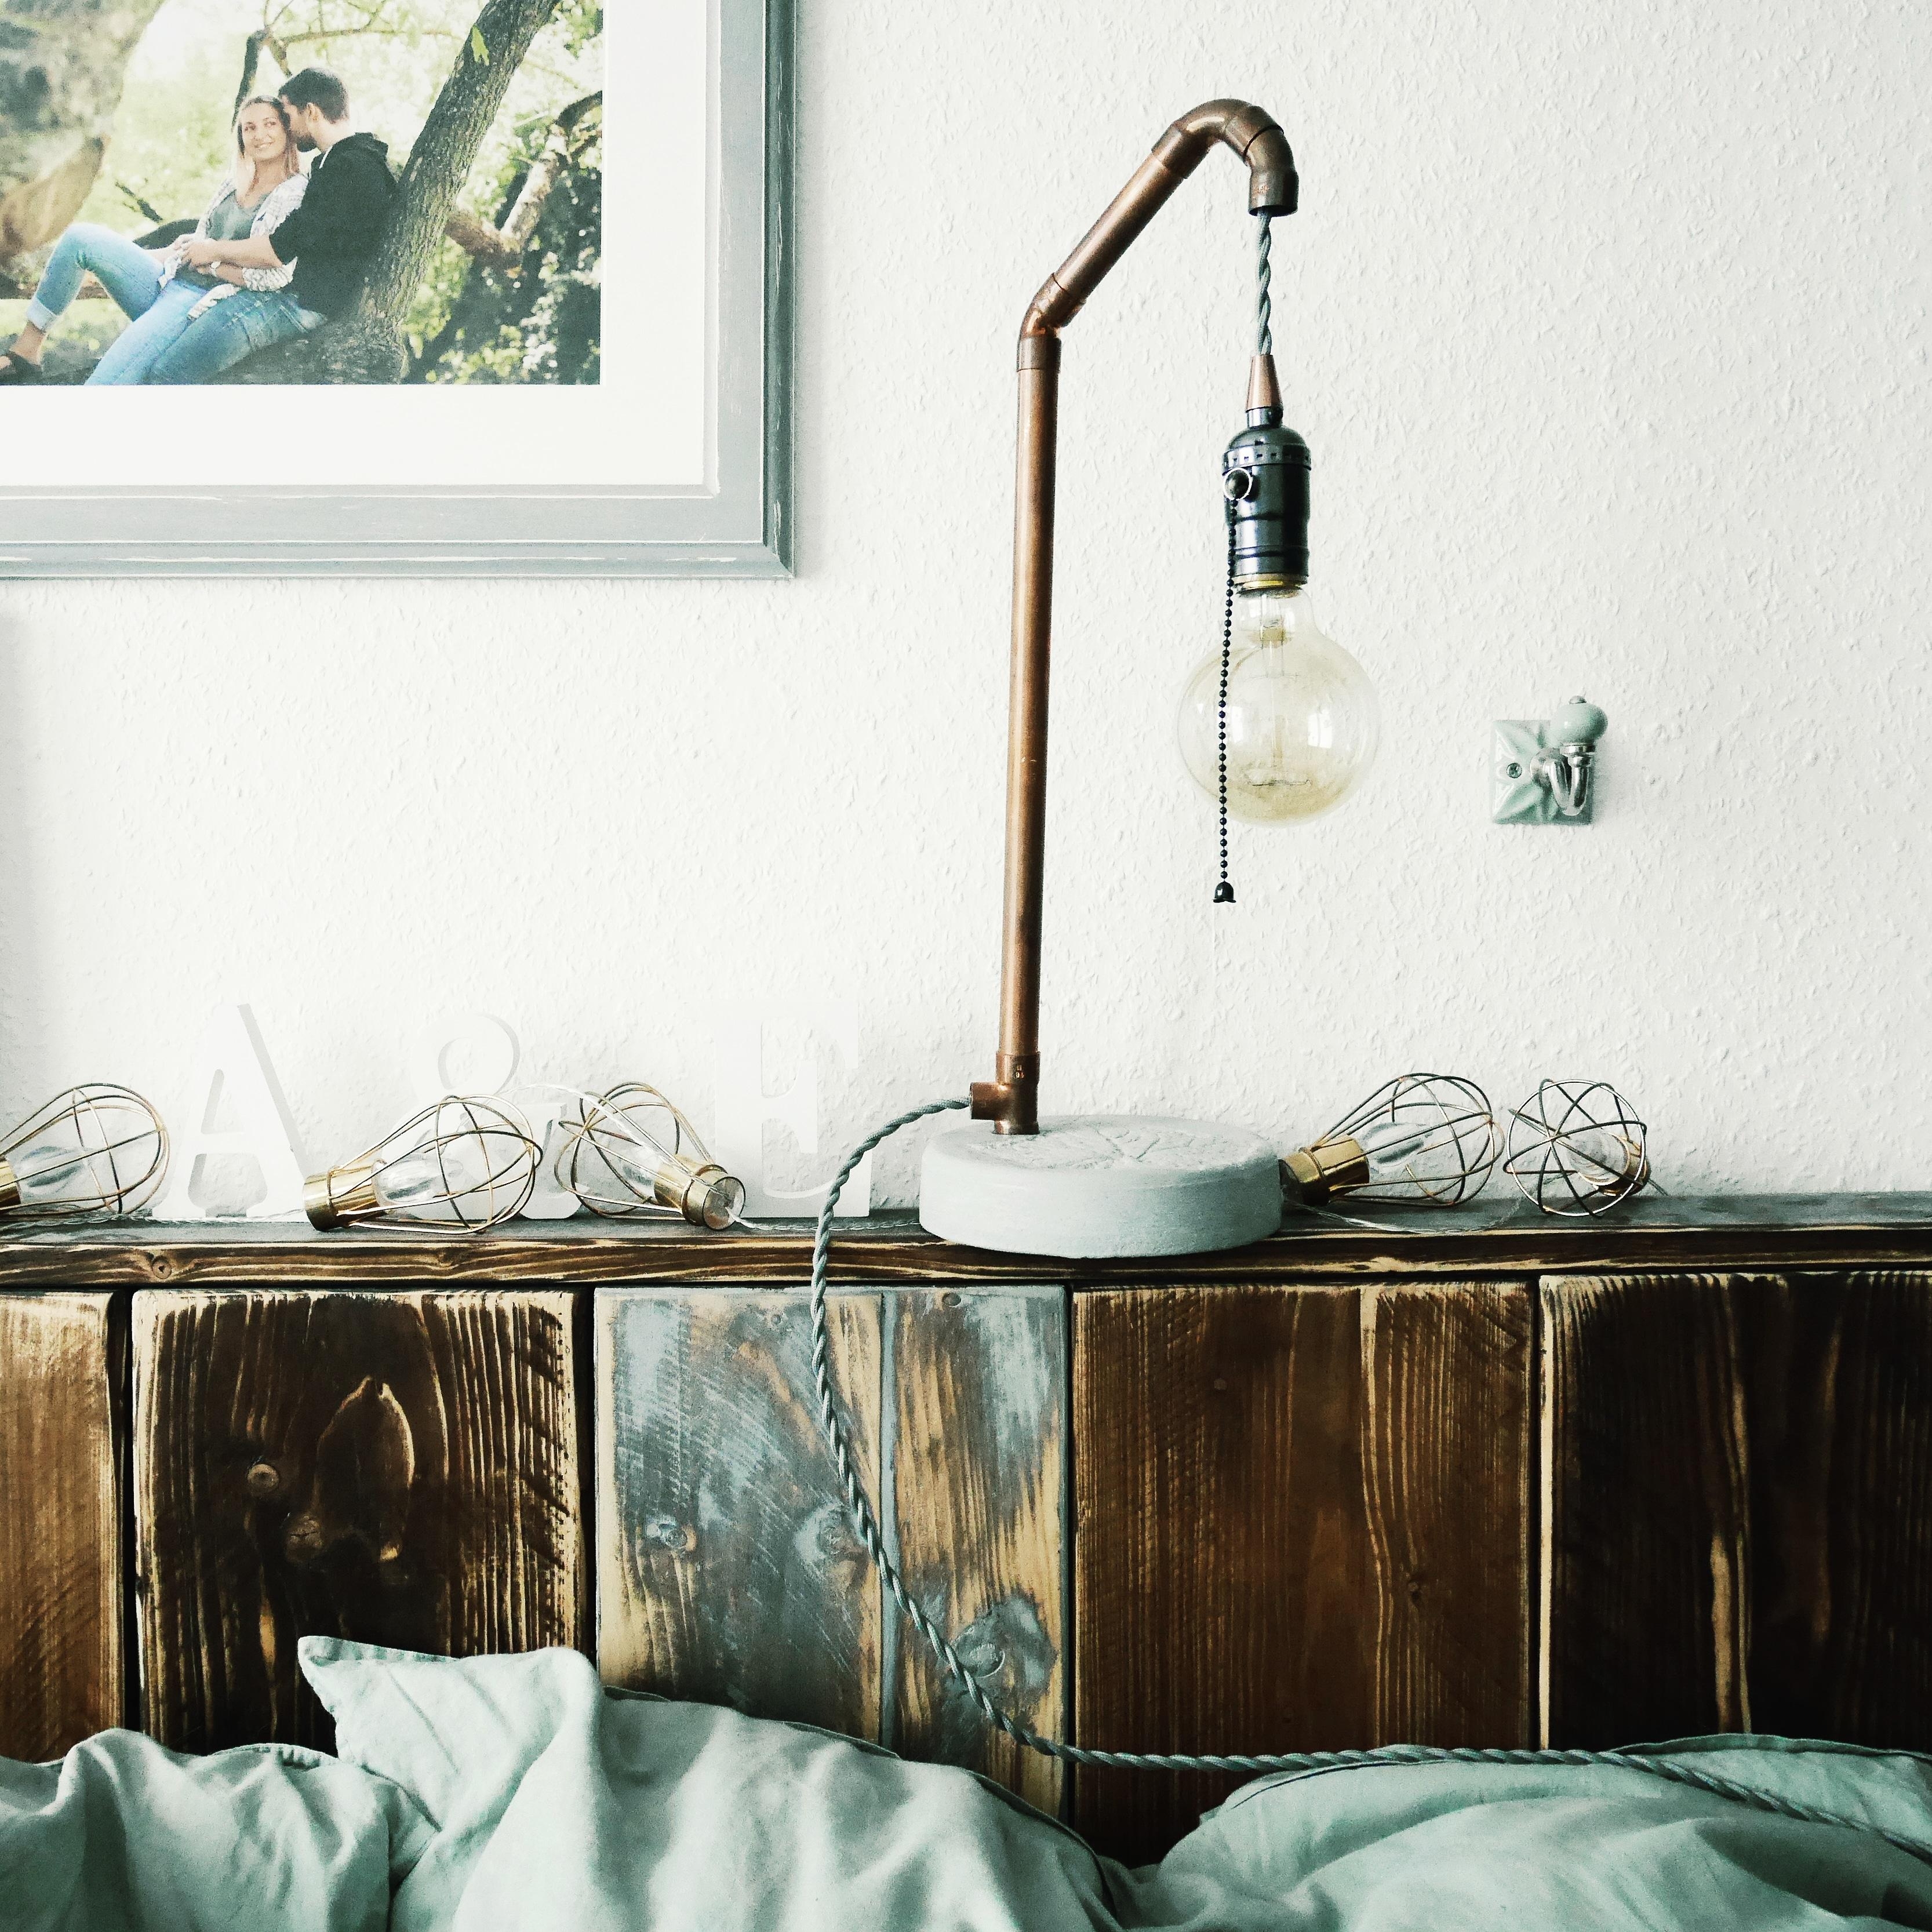 Tischlampe aus #Kupferrohr und #Beton 💙
#DIYWeek #DIYUpcycling